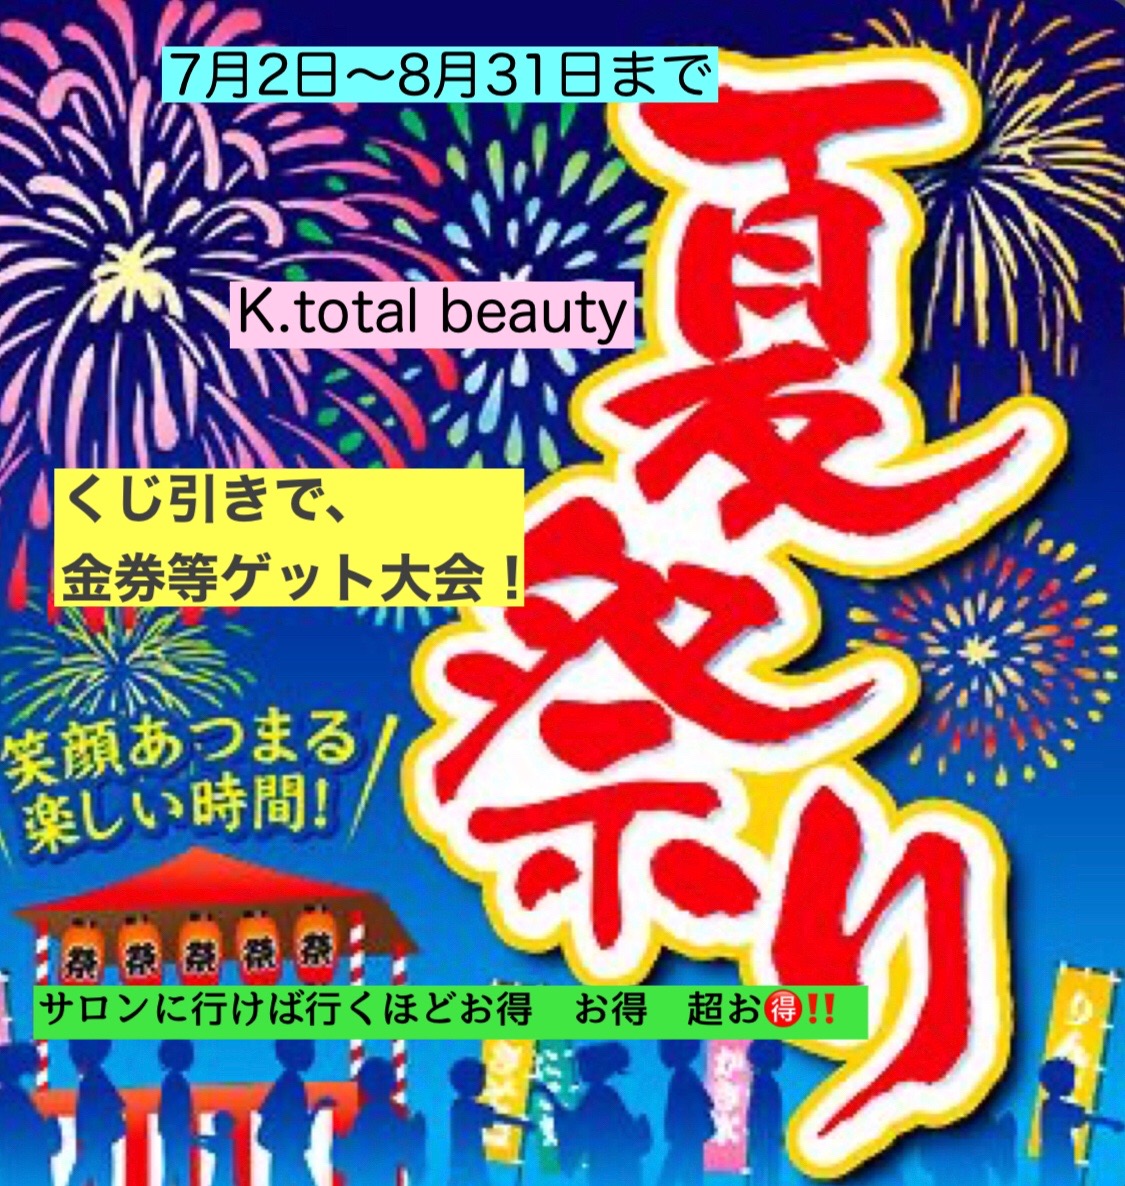 K.total beautyの夏祭りがあつ～い！ 超お得キャンペーン！